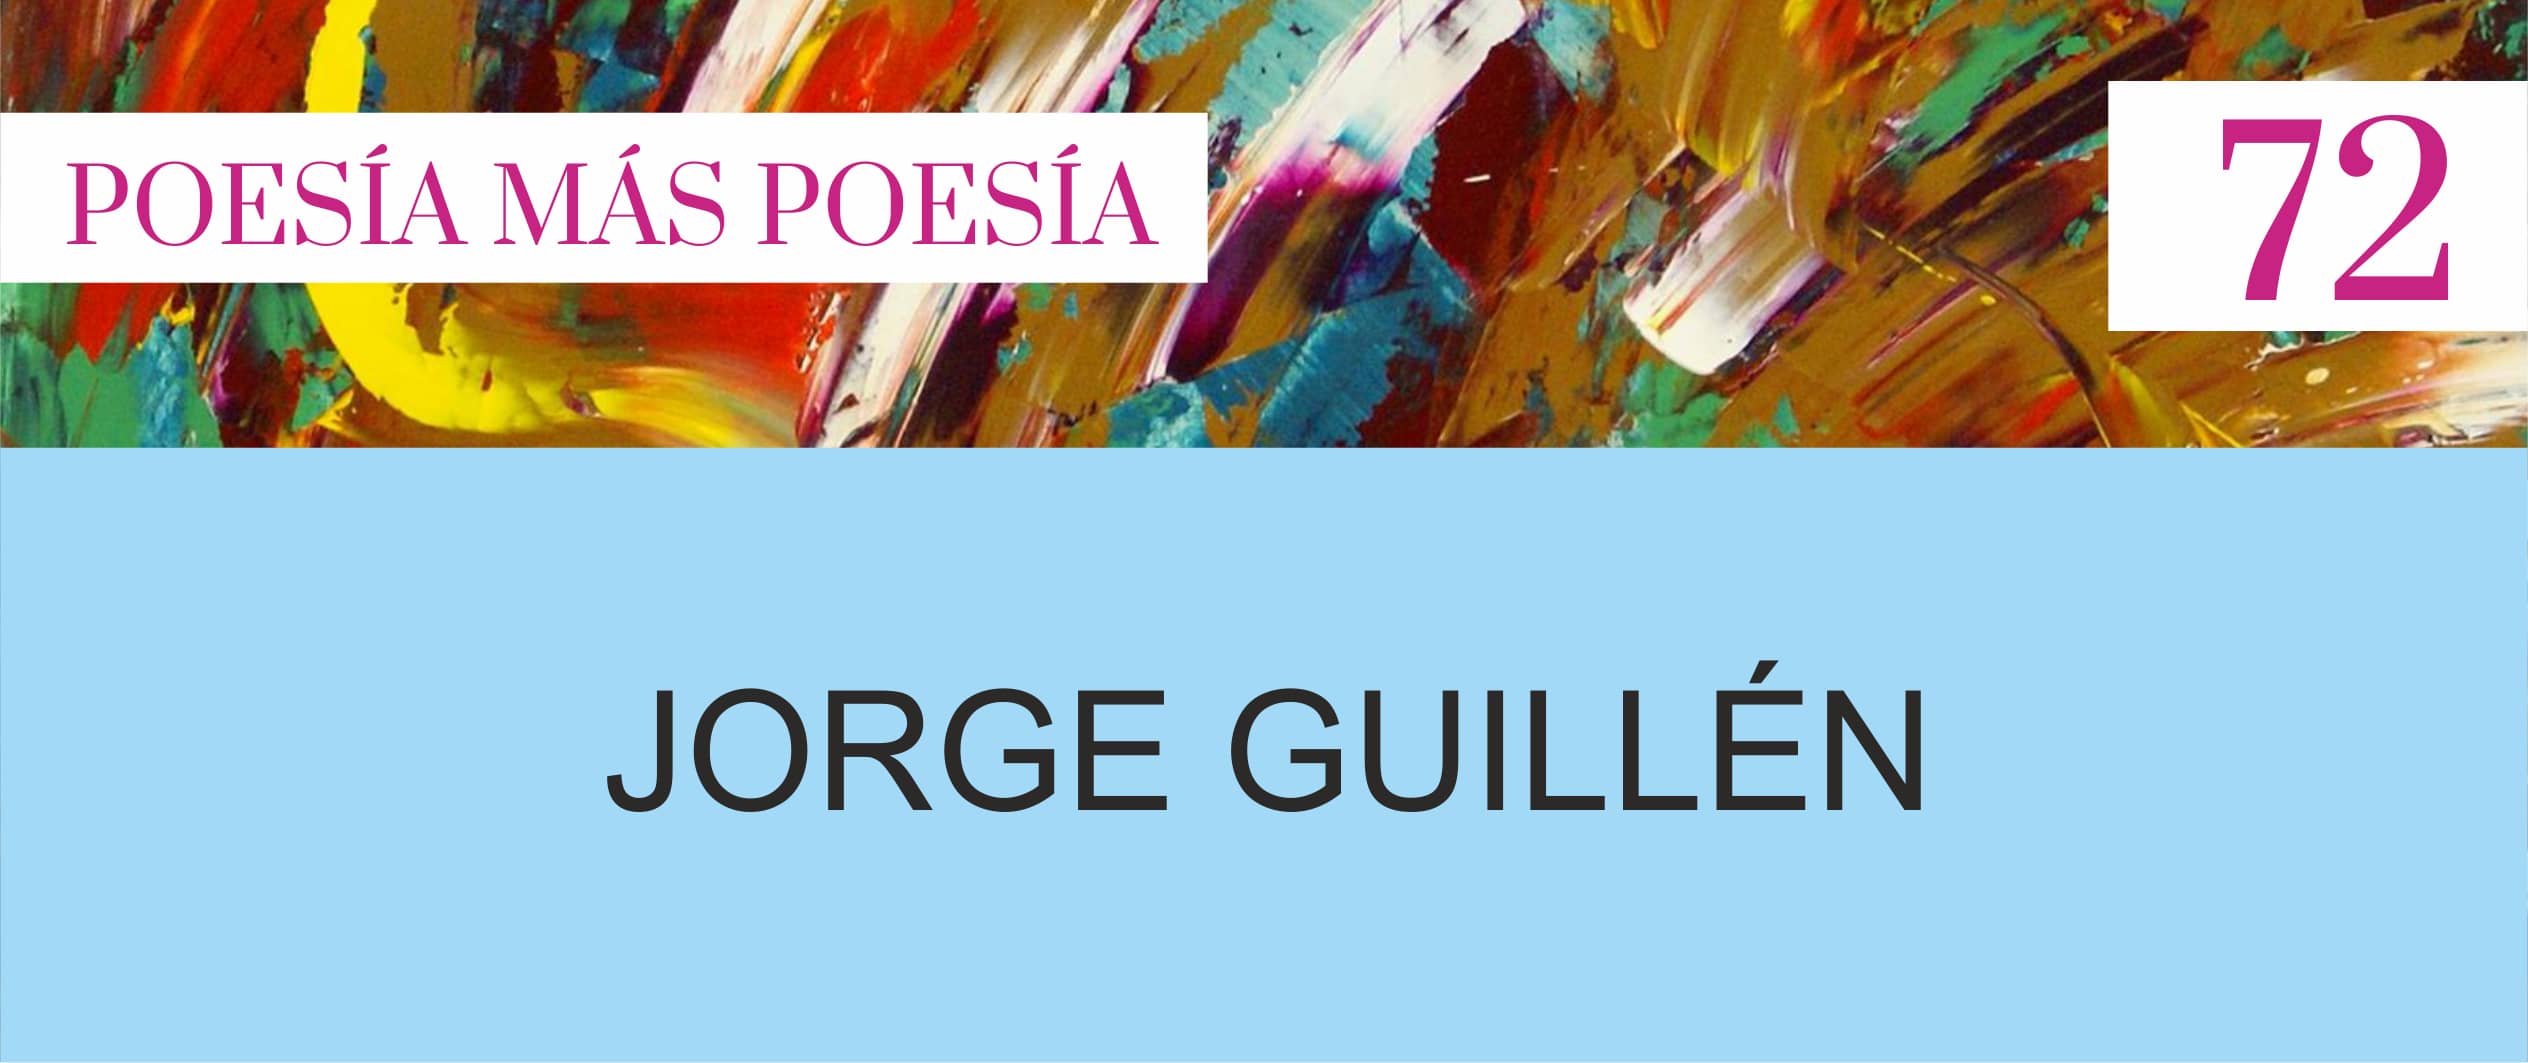 POESÍA ESPAÑOLA JORGE GUILLÉN REVISTA DE POESÍA - Poesia Online